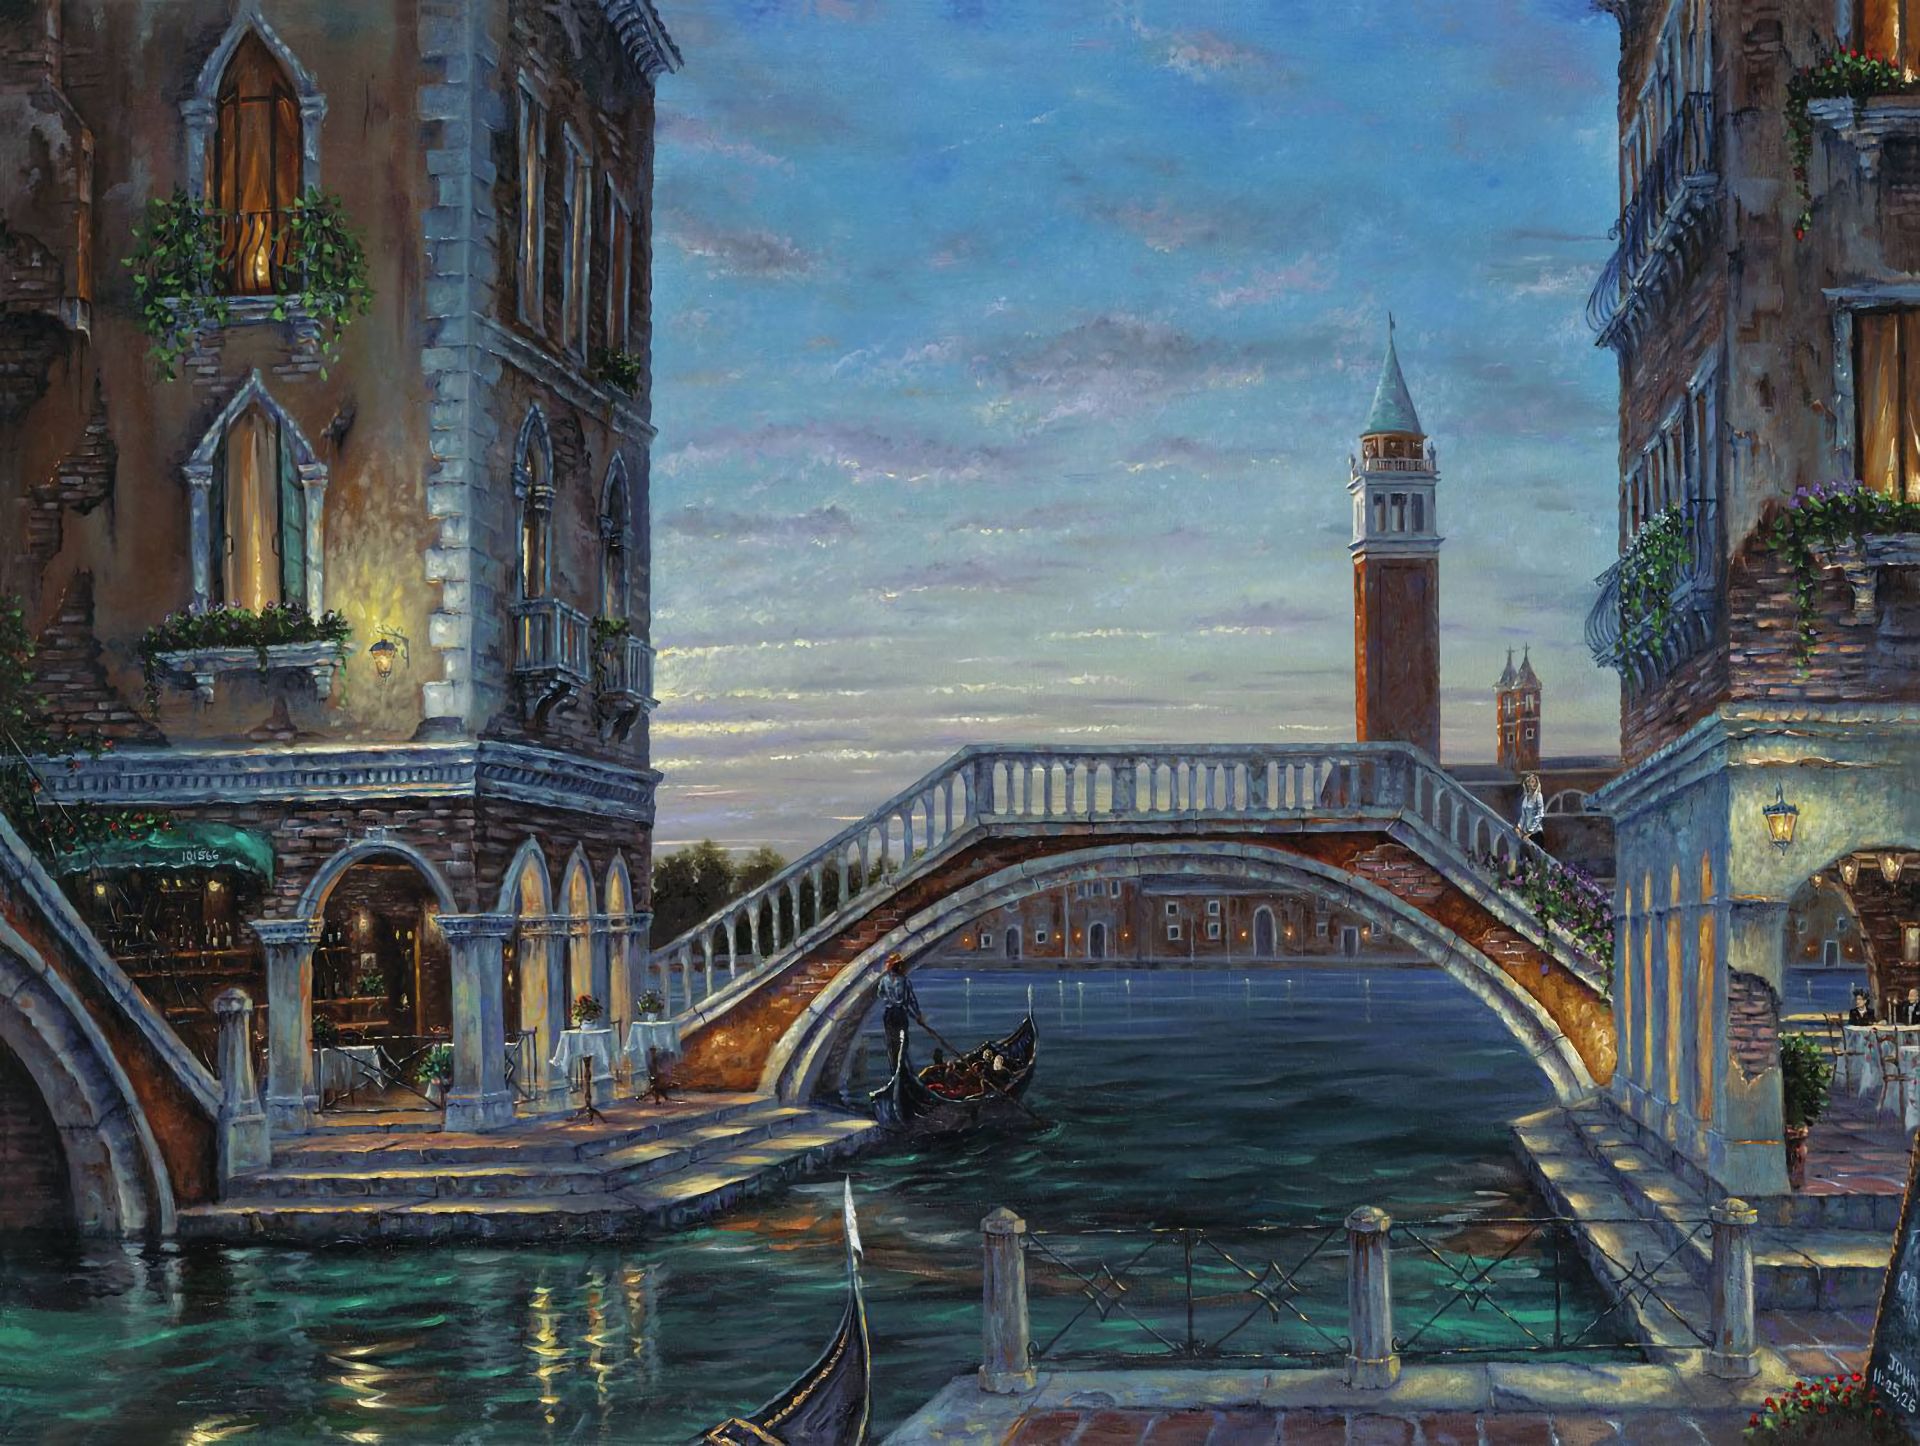 Скачать обои бесплатно Венеция, Мост, Лодка, Здание, Картина, Канал, Художественные картинка на рабочий стол ПК